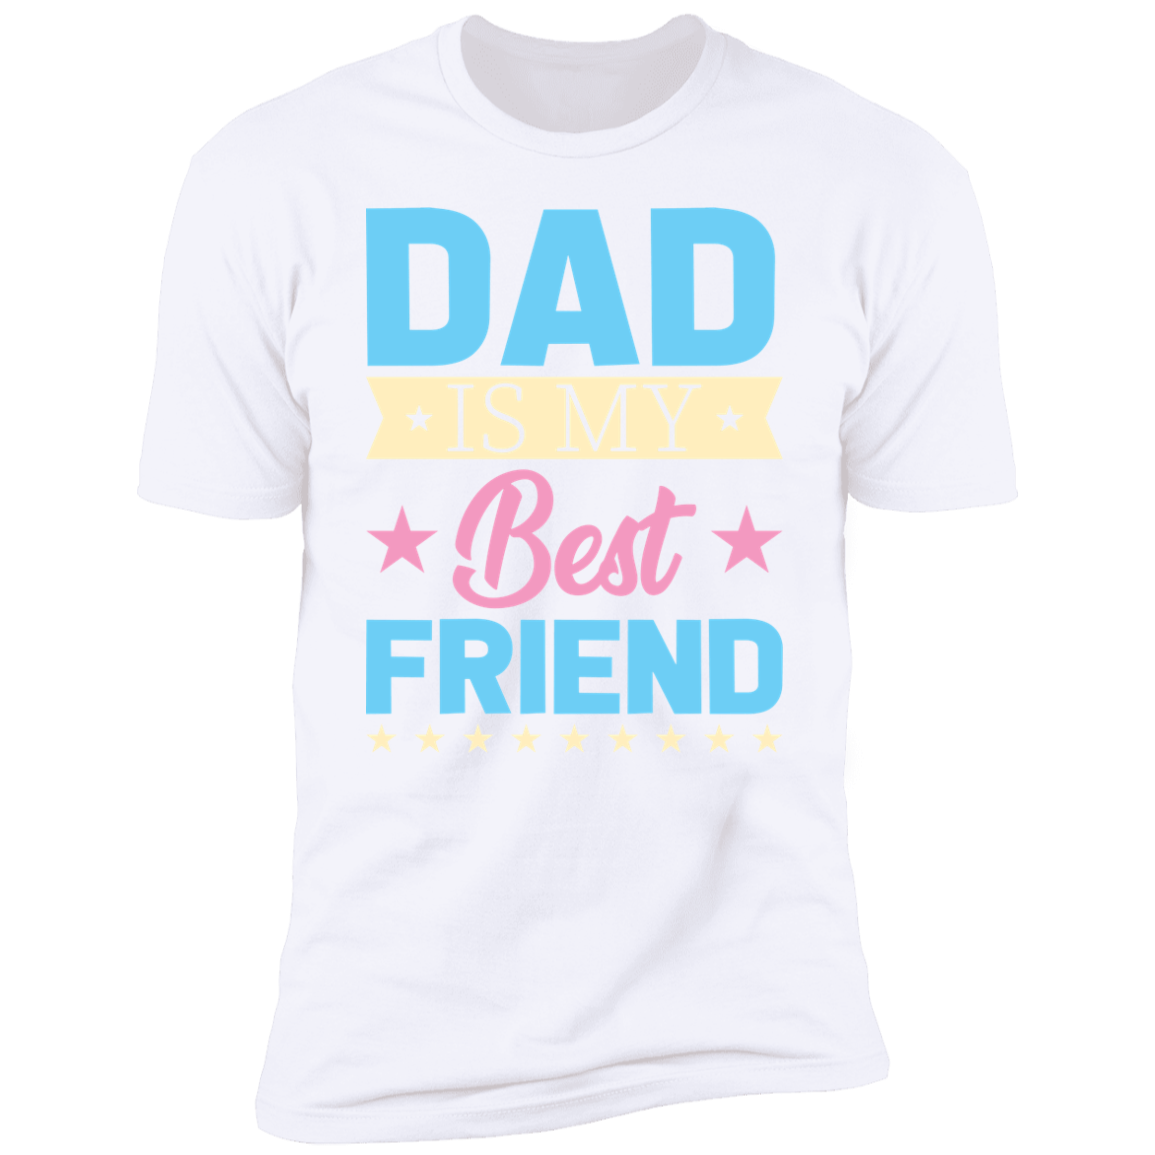 DAD IS MY BEST FRIEND-Premium Short Sleeve T-Shirt